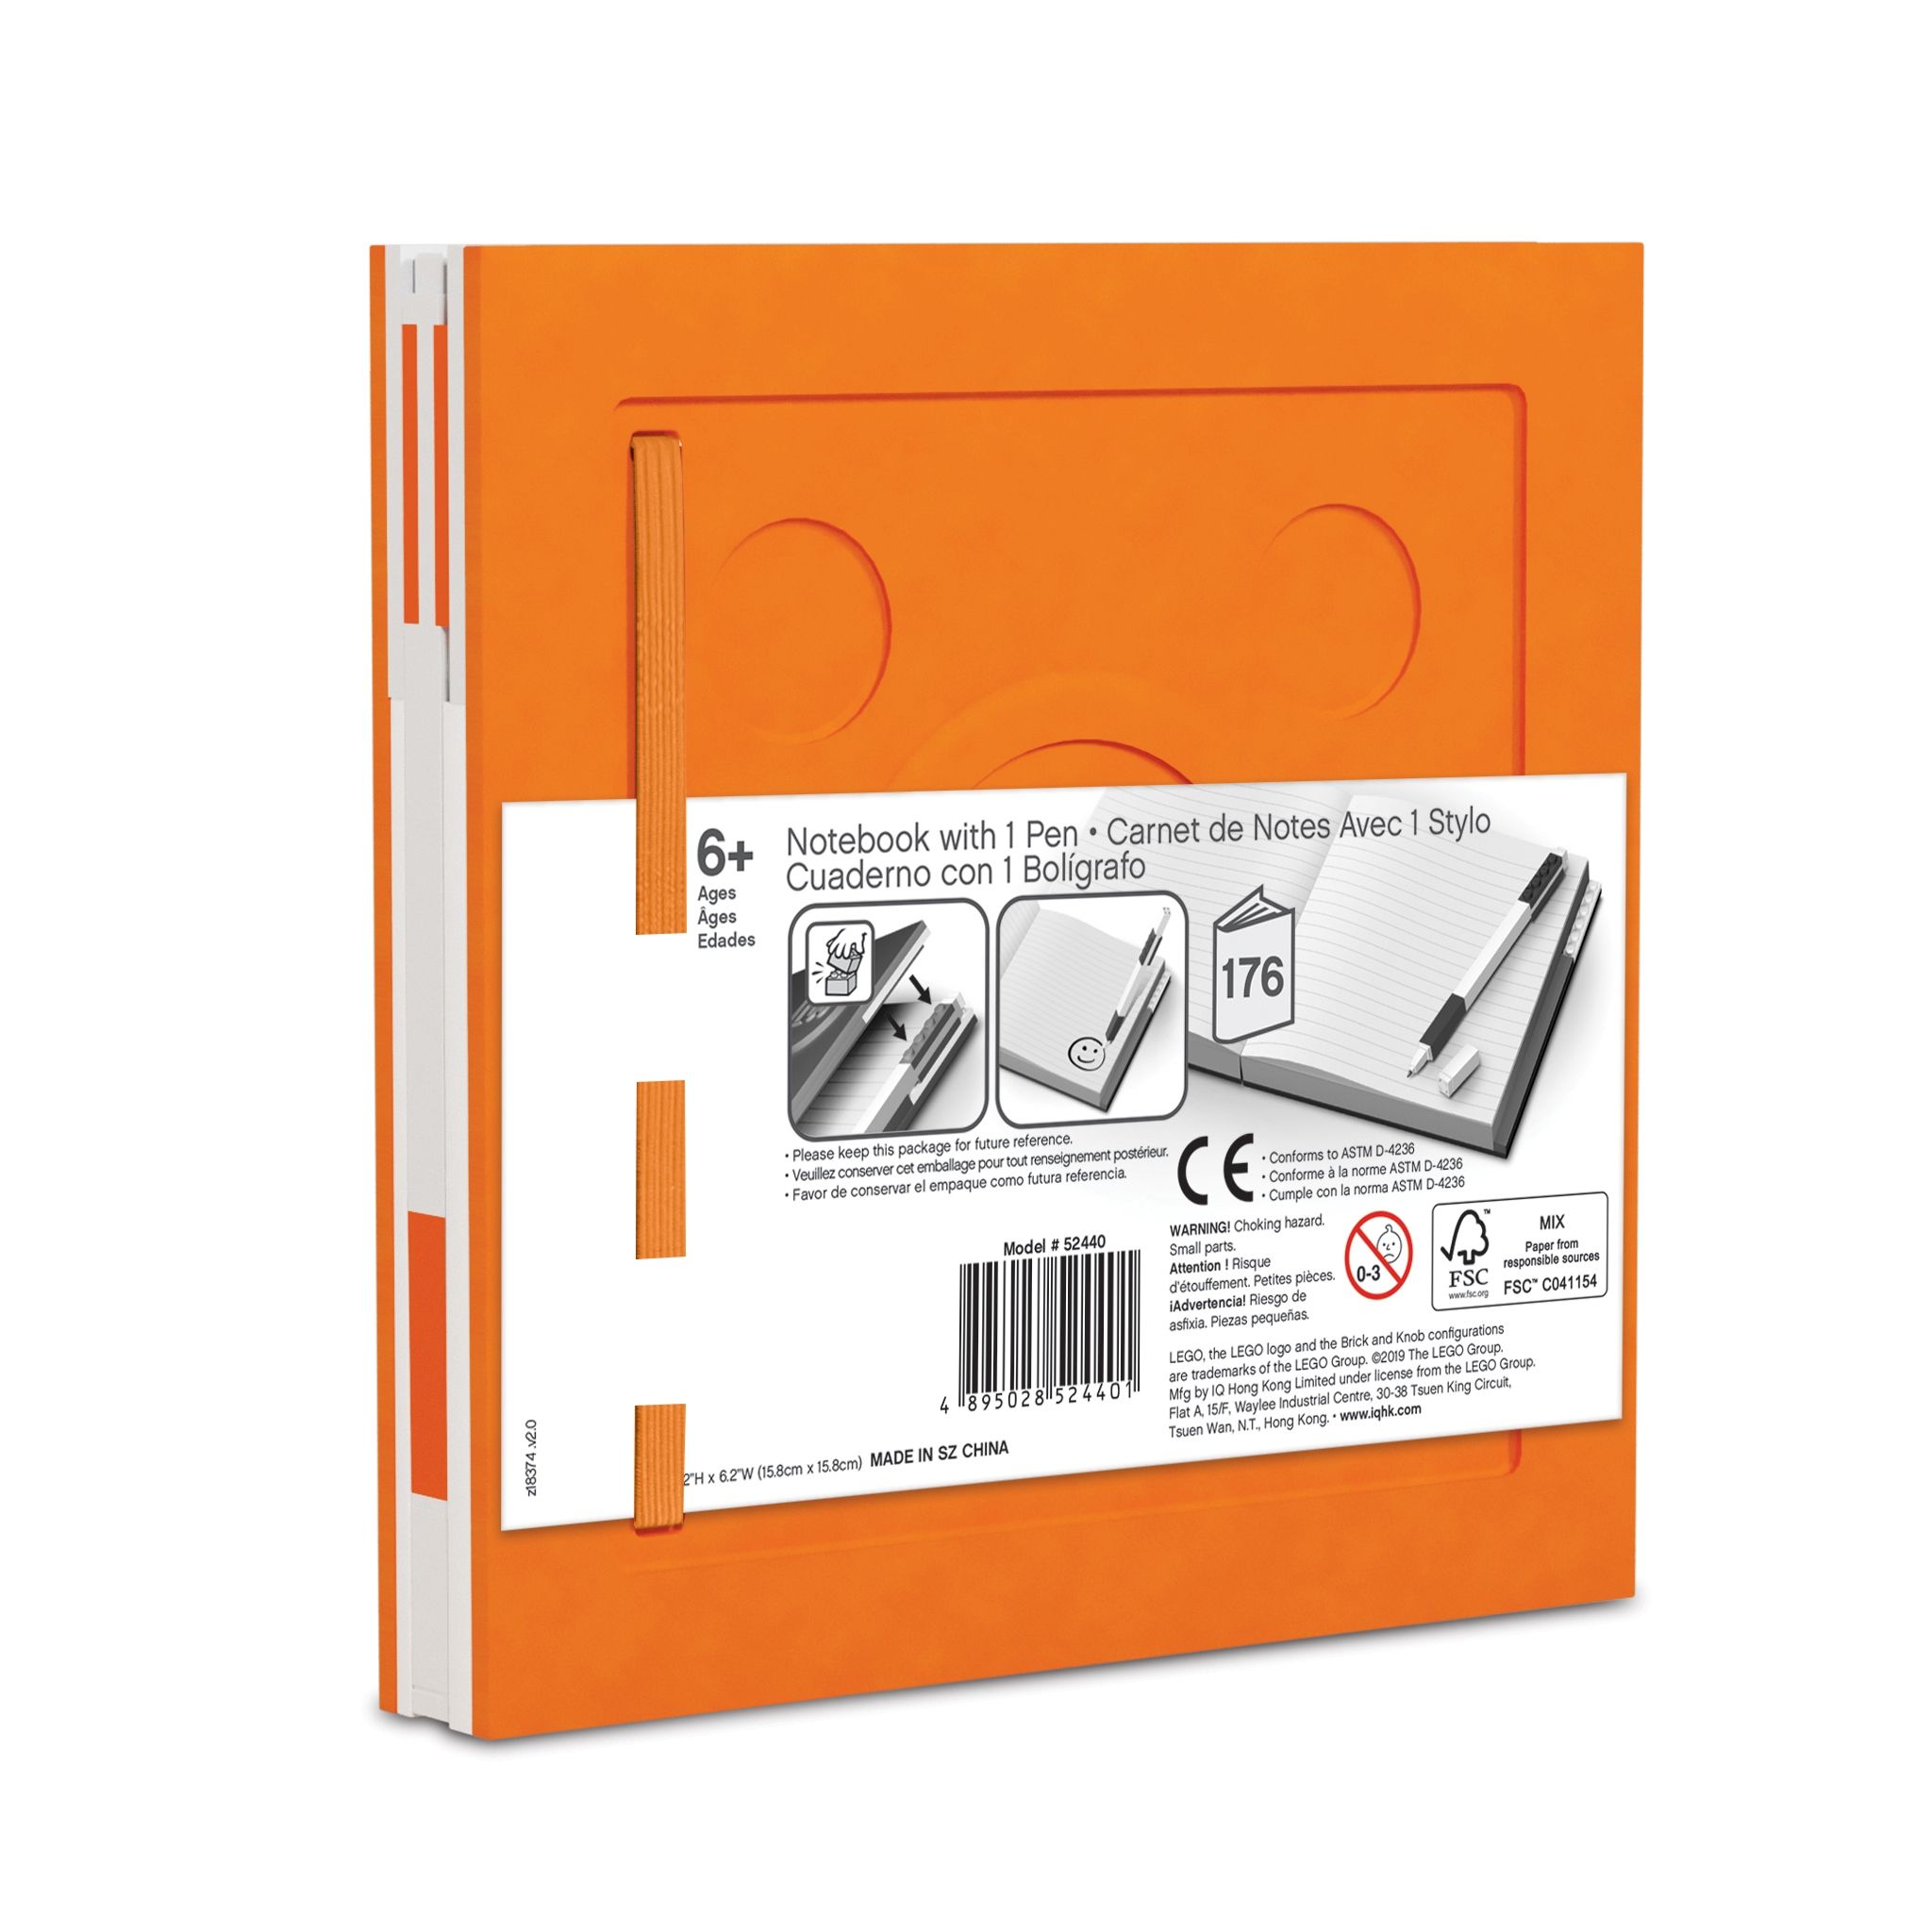 LEGO Gear 5007240 Verschließbares Notizbuch mit Gelschreiber in Orange LEGO_5007240_alt2.jpg